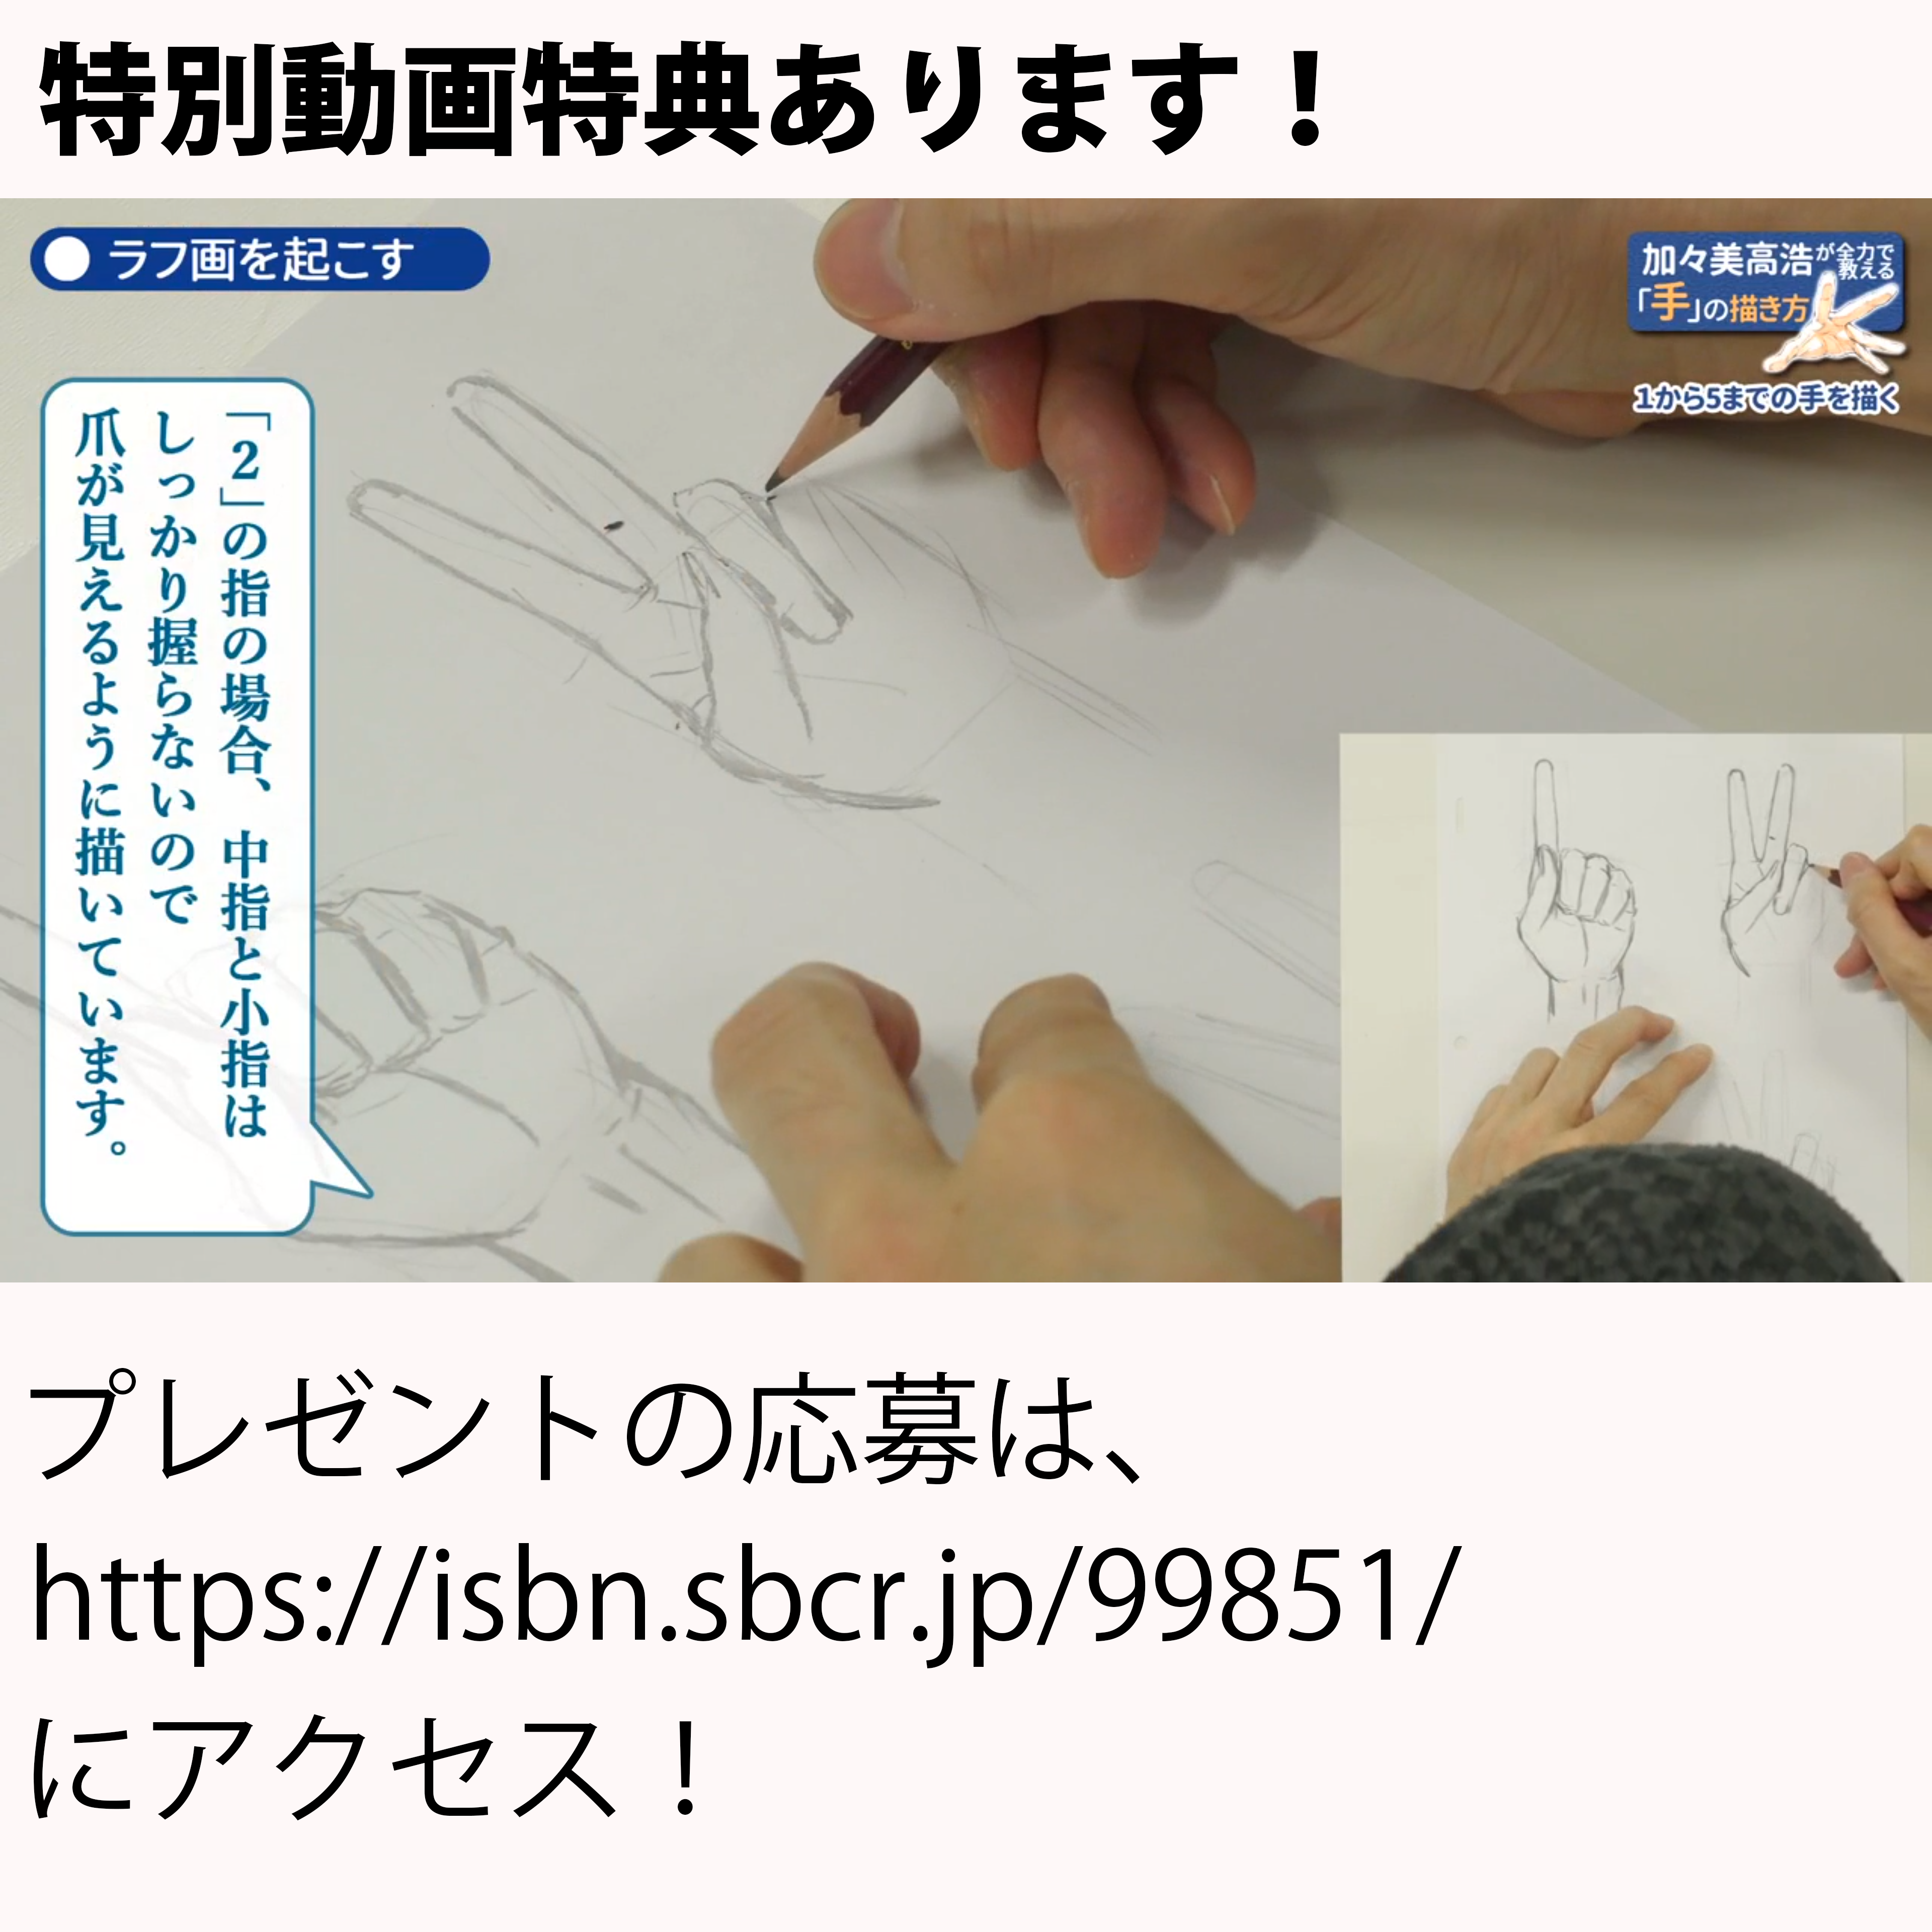 加々美高浩が全力で教える「手」の描き方 | SBクリエイティブ